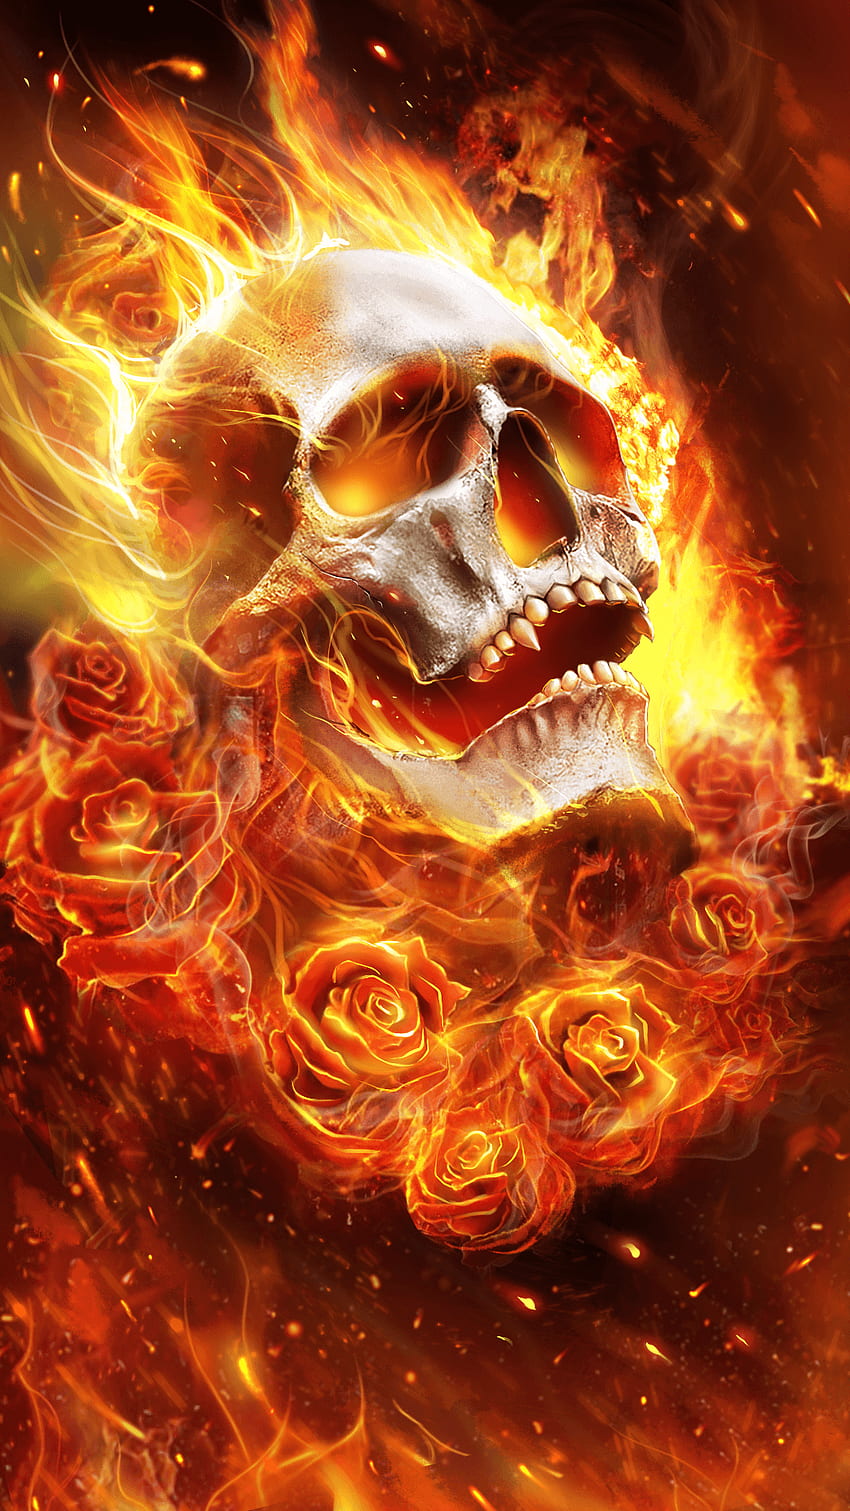 Skull on Fire tattoo